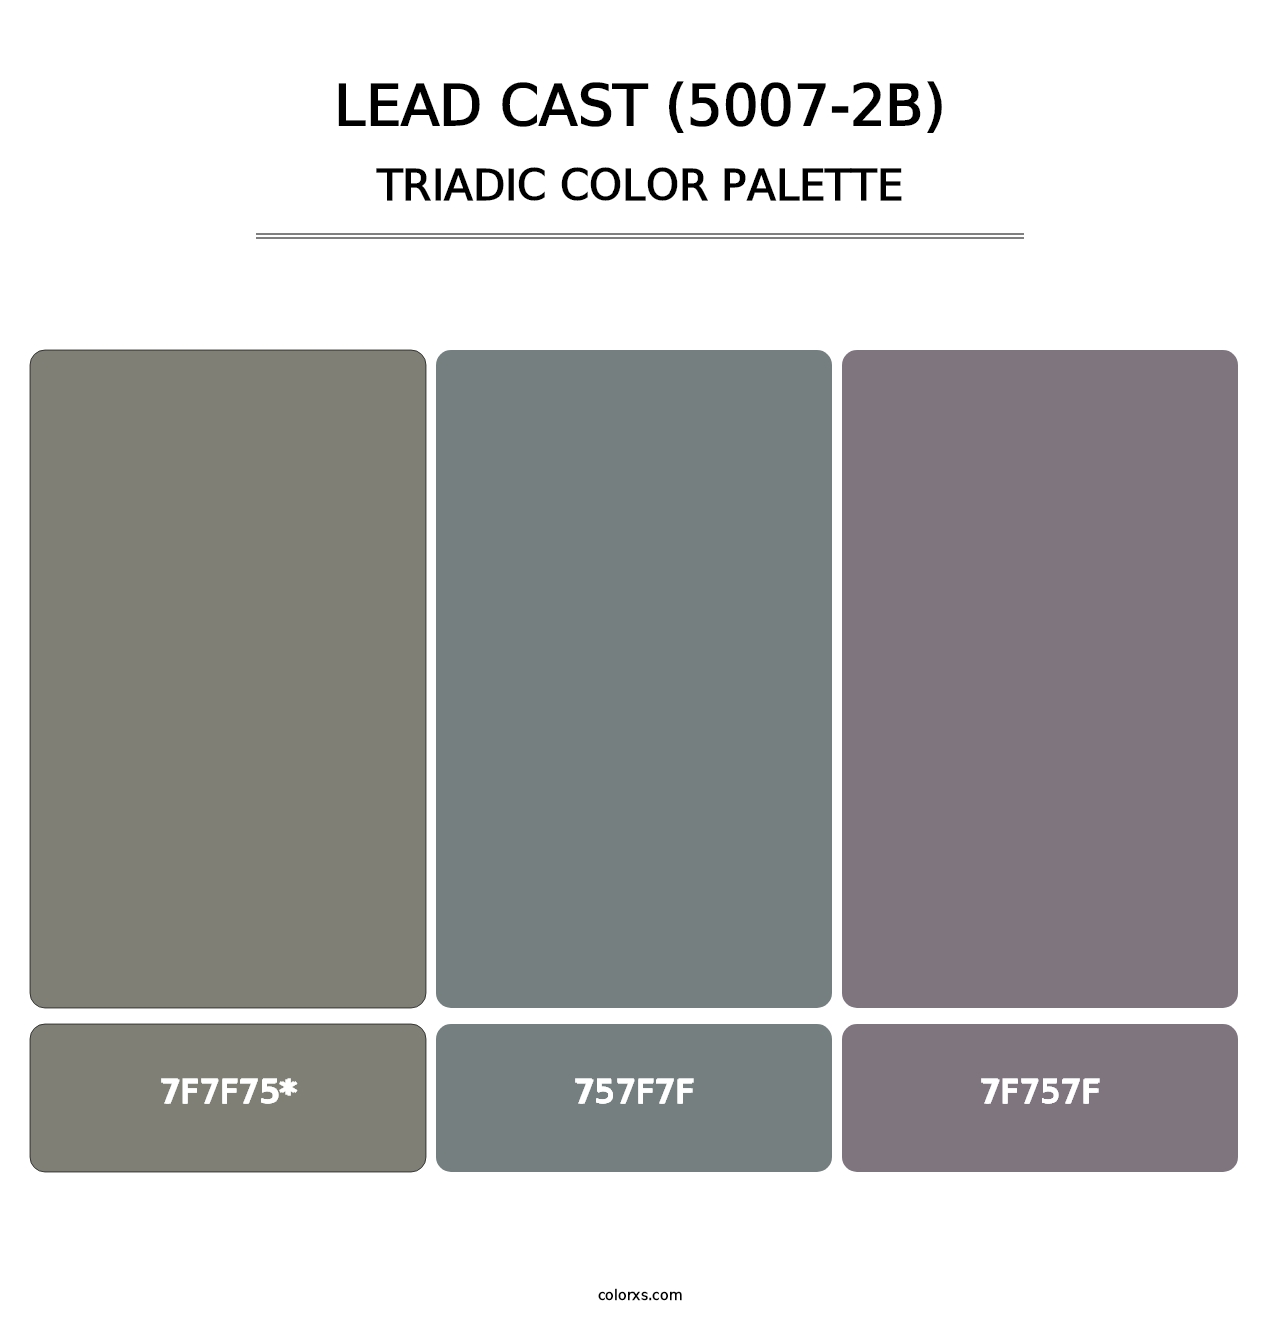 Lead Cast (5007-2B) - Triadic Color Palette